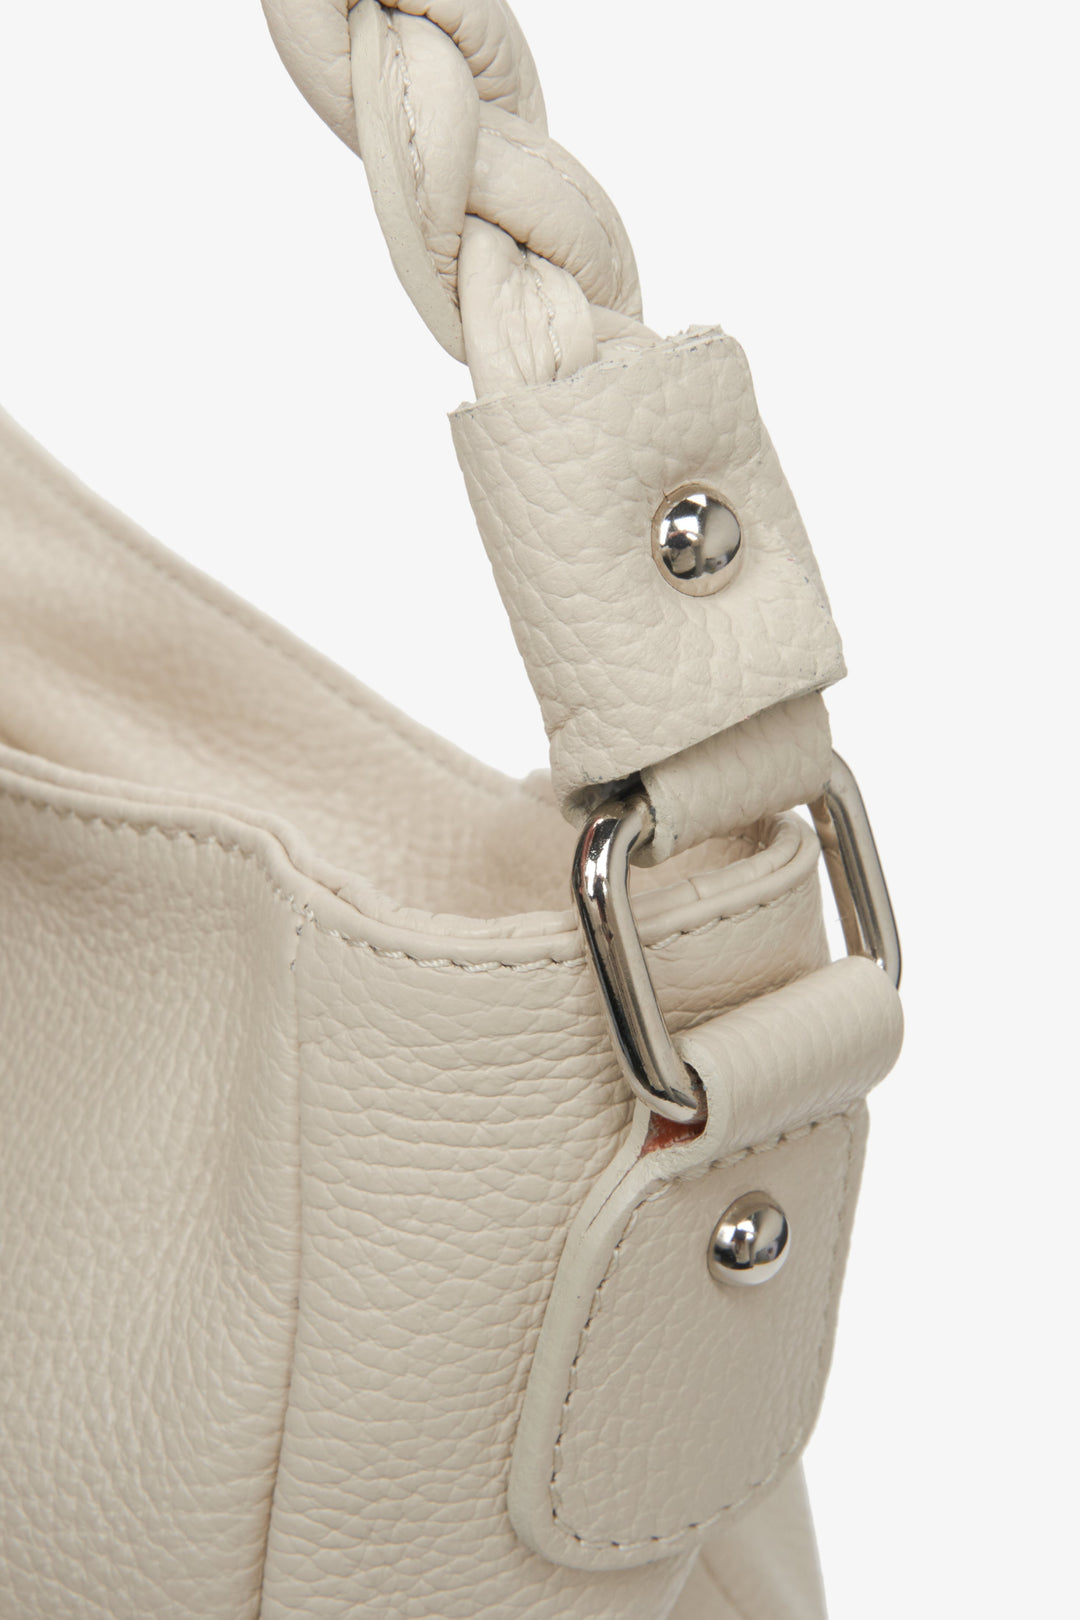 Women's light beige handbag/shoulder bag made in Italy - close up on details.